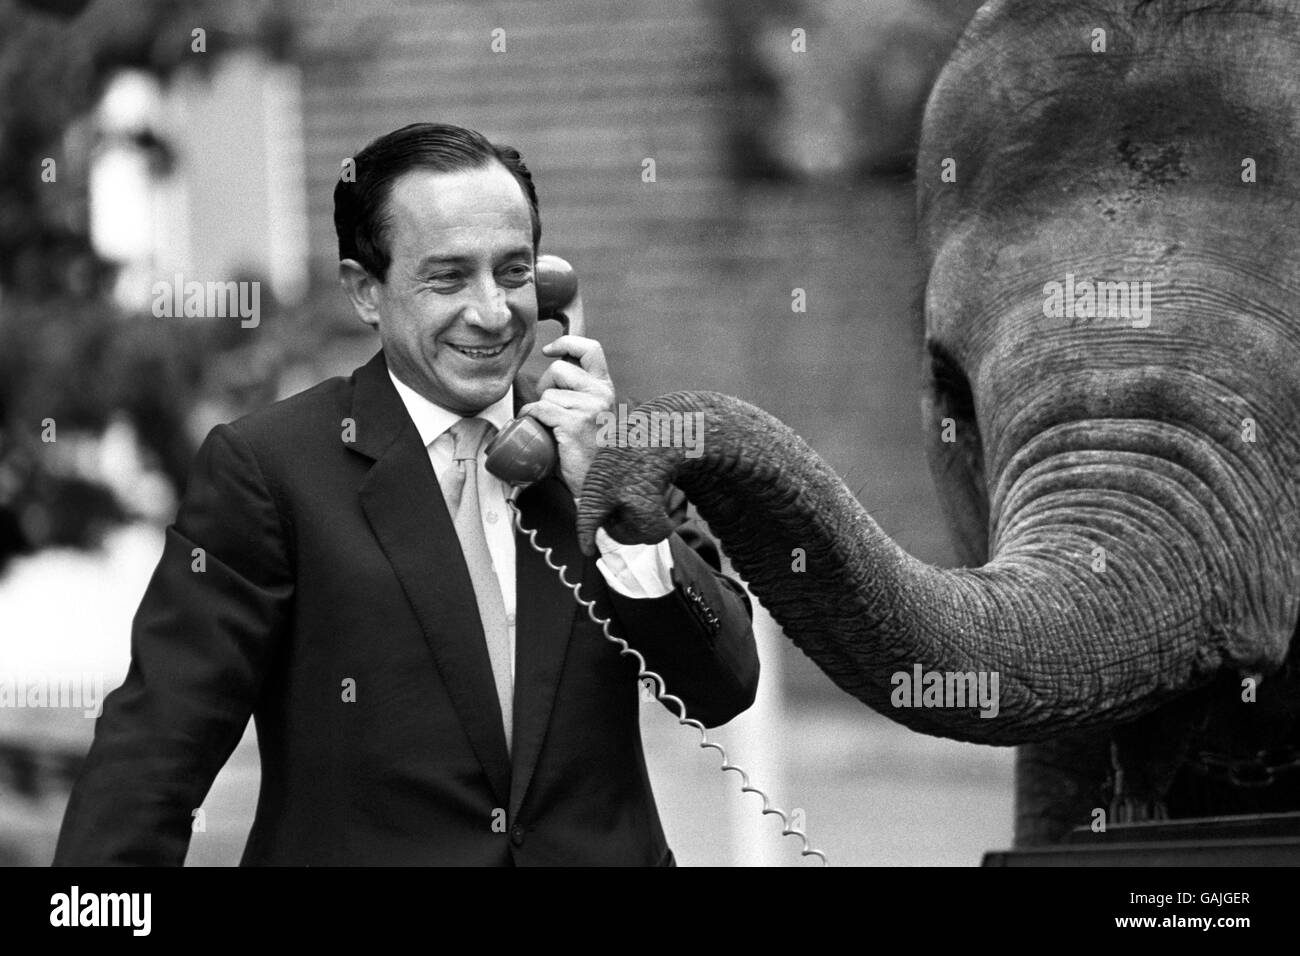 L'artista spagnolo mime Alberto Vidal con un elefante allo Zoo di Londra. Il signor Vidal diventerà una delle mostre dello zoo quando ritrarre le abitudini quotidiane dell'uomo urbano. Foto Stock